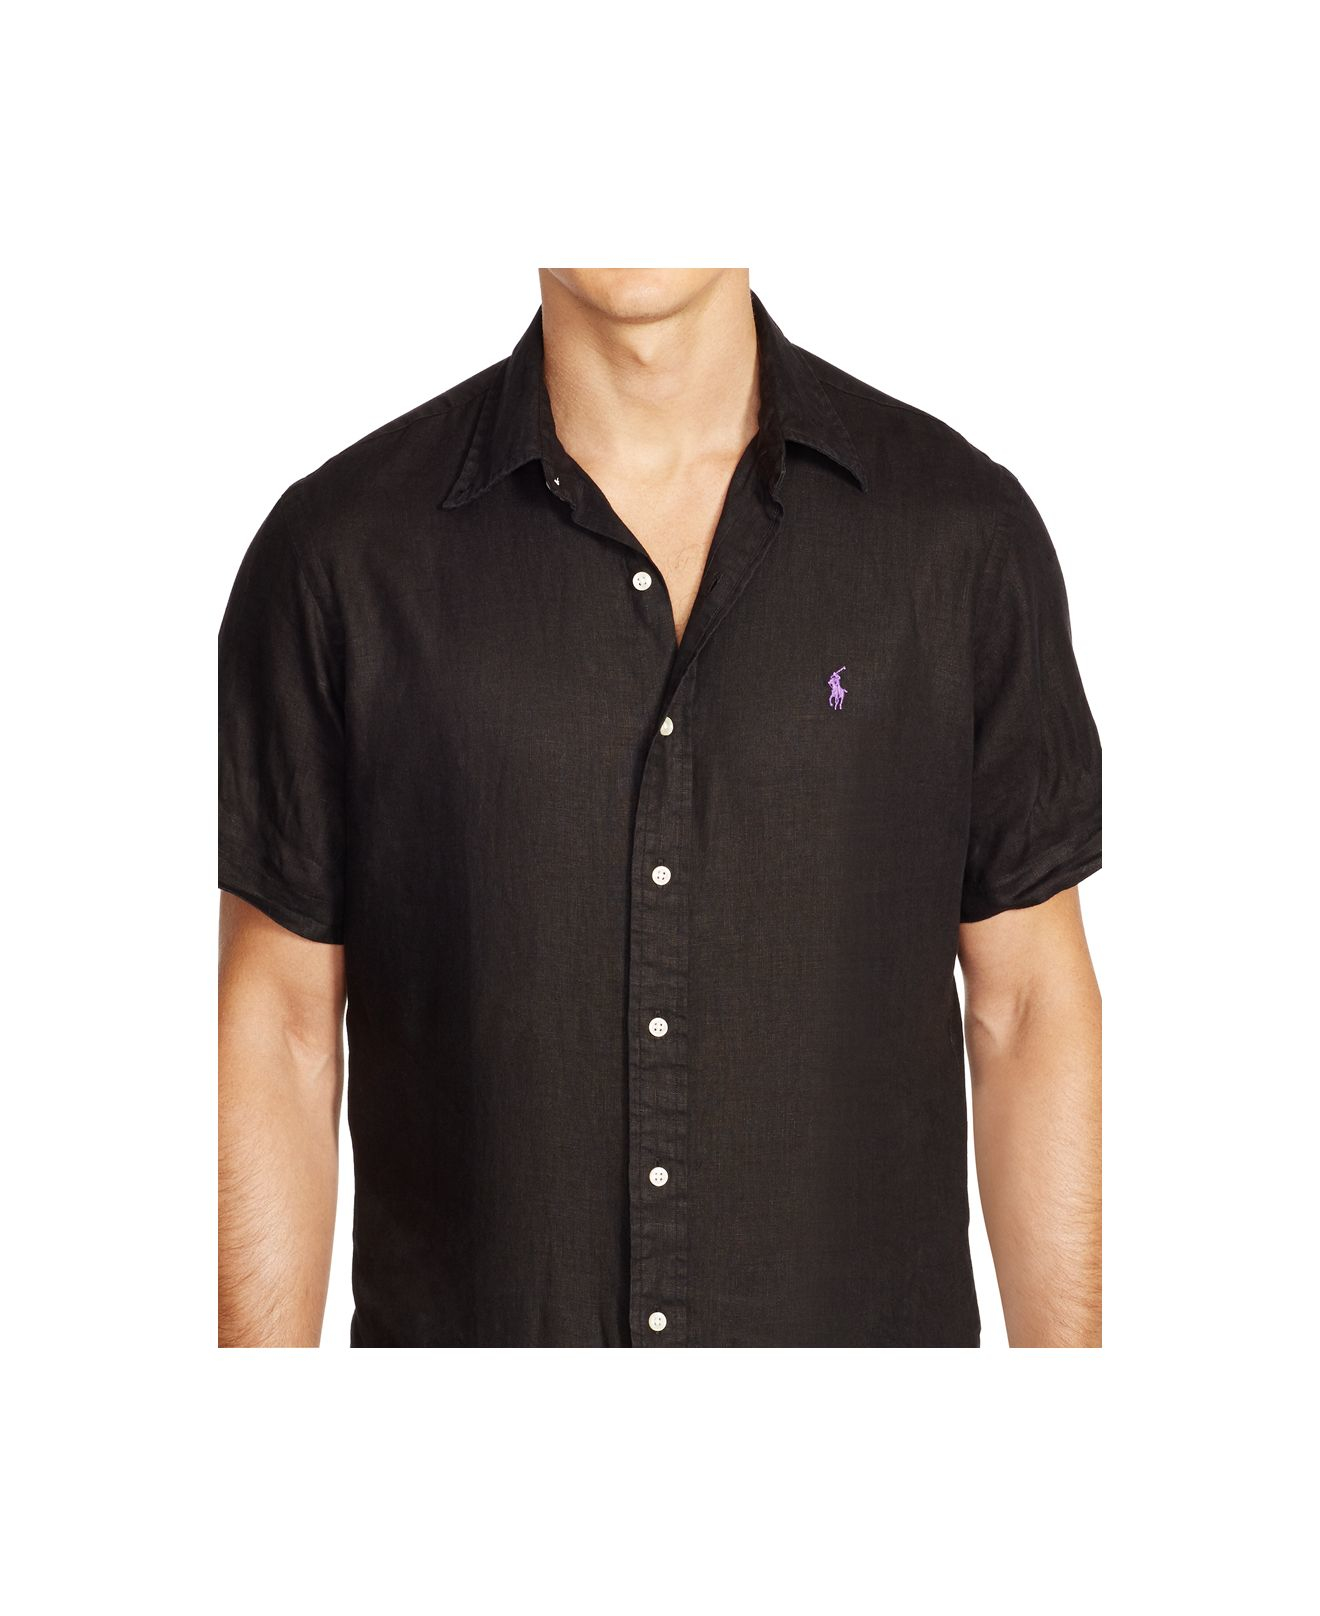 Polo Ralph Lauren Short-sleeved Linen Shirt in Black for Men - Lyst